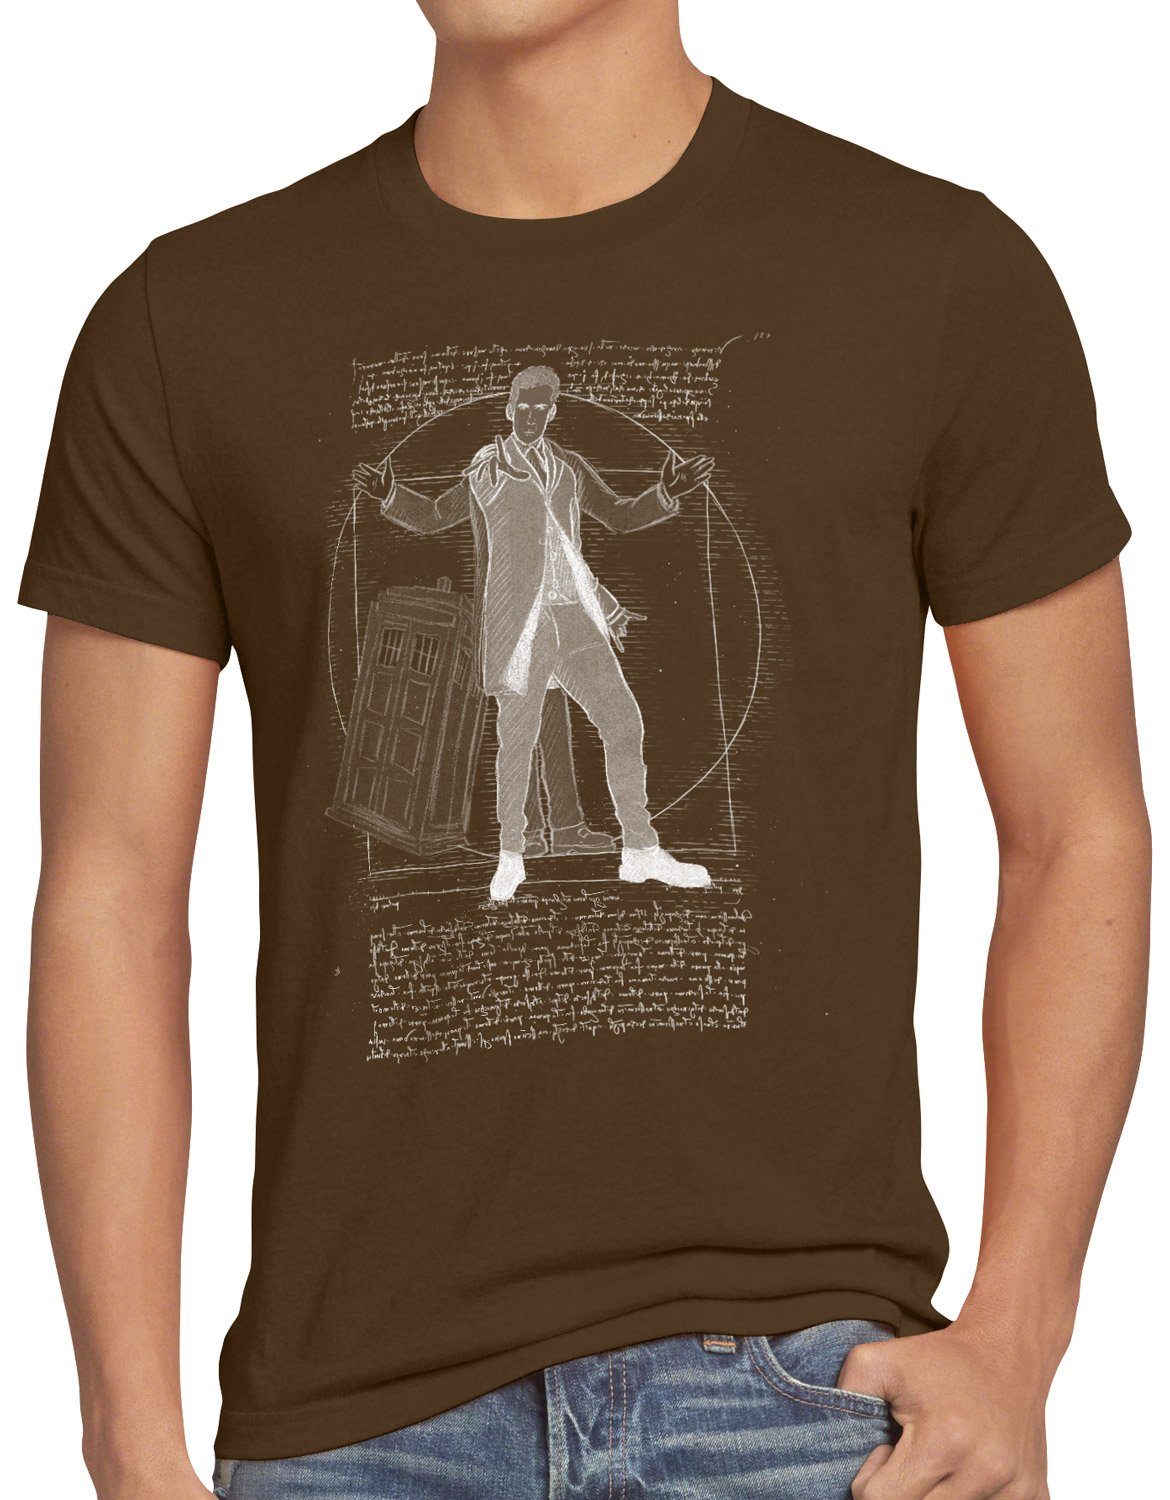 Doktor braun T-Shirt Herren serie Print-Shirt Vitruvianischer polizei style3 notrufzelle zeitreise